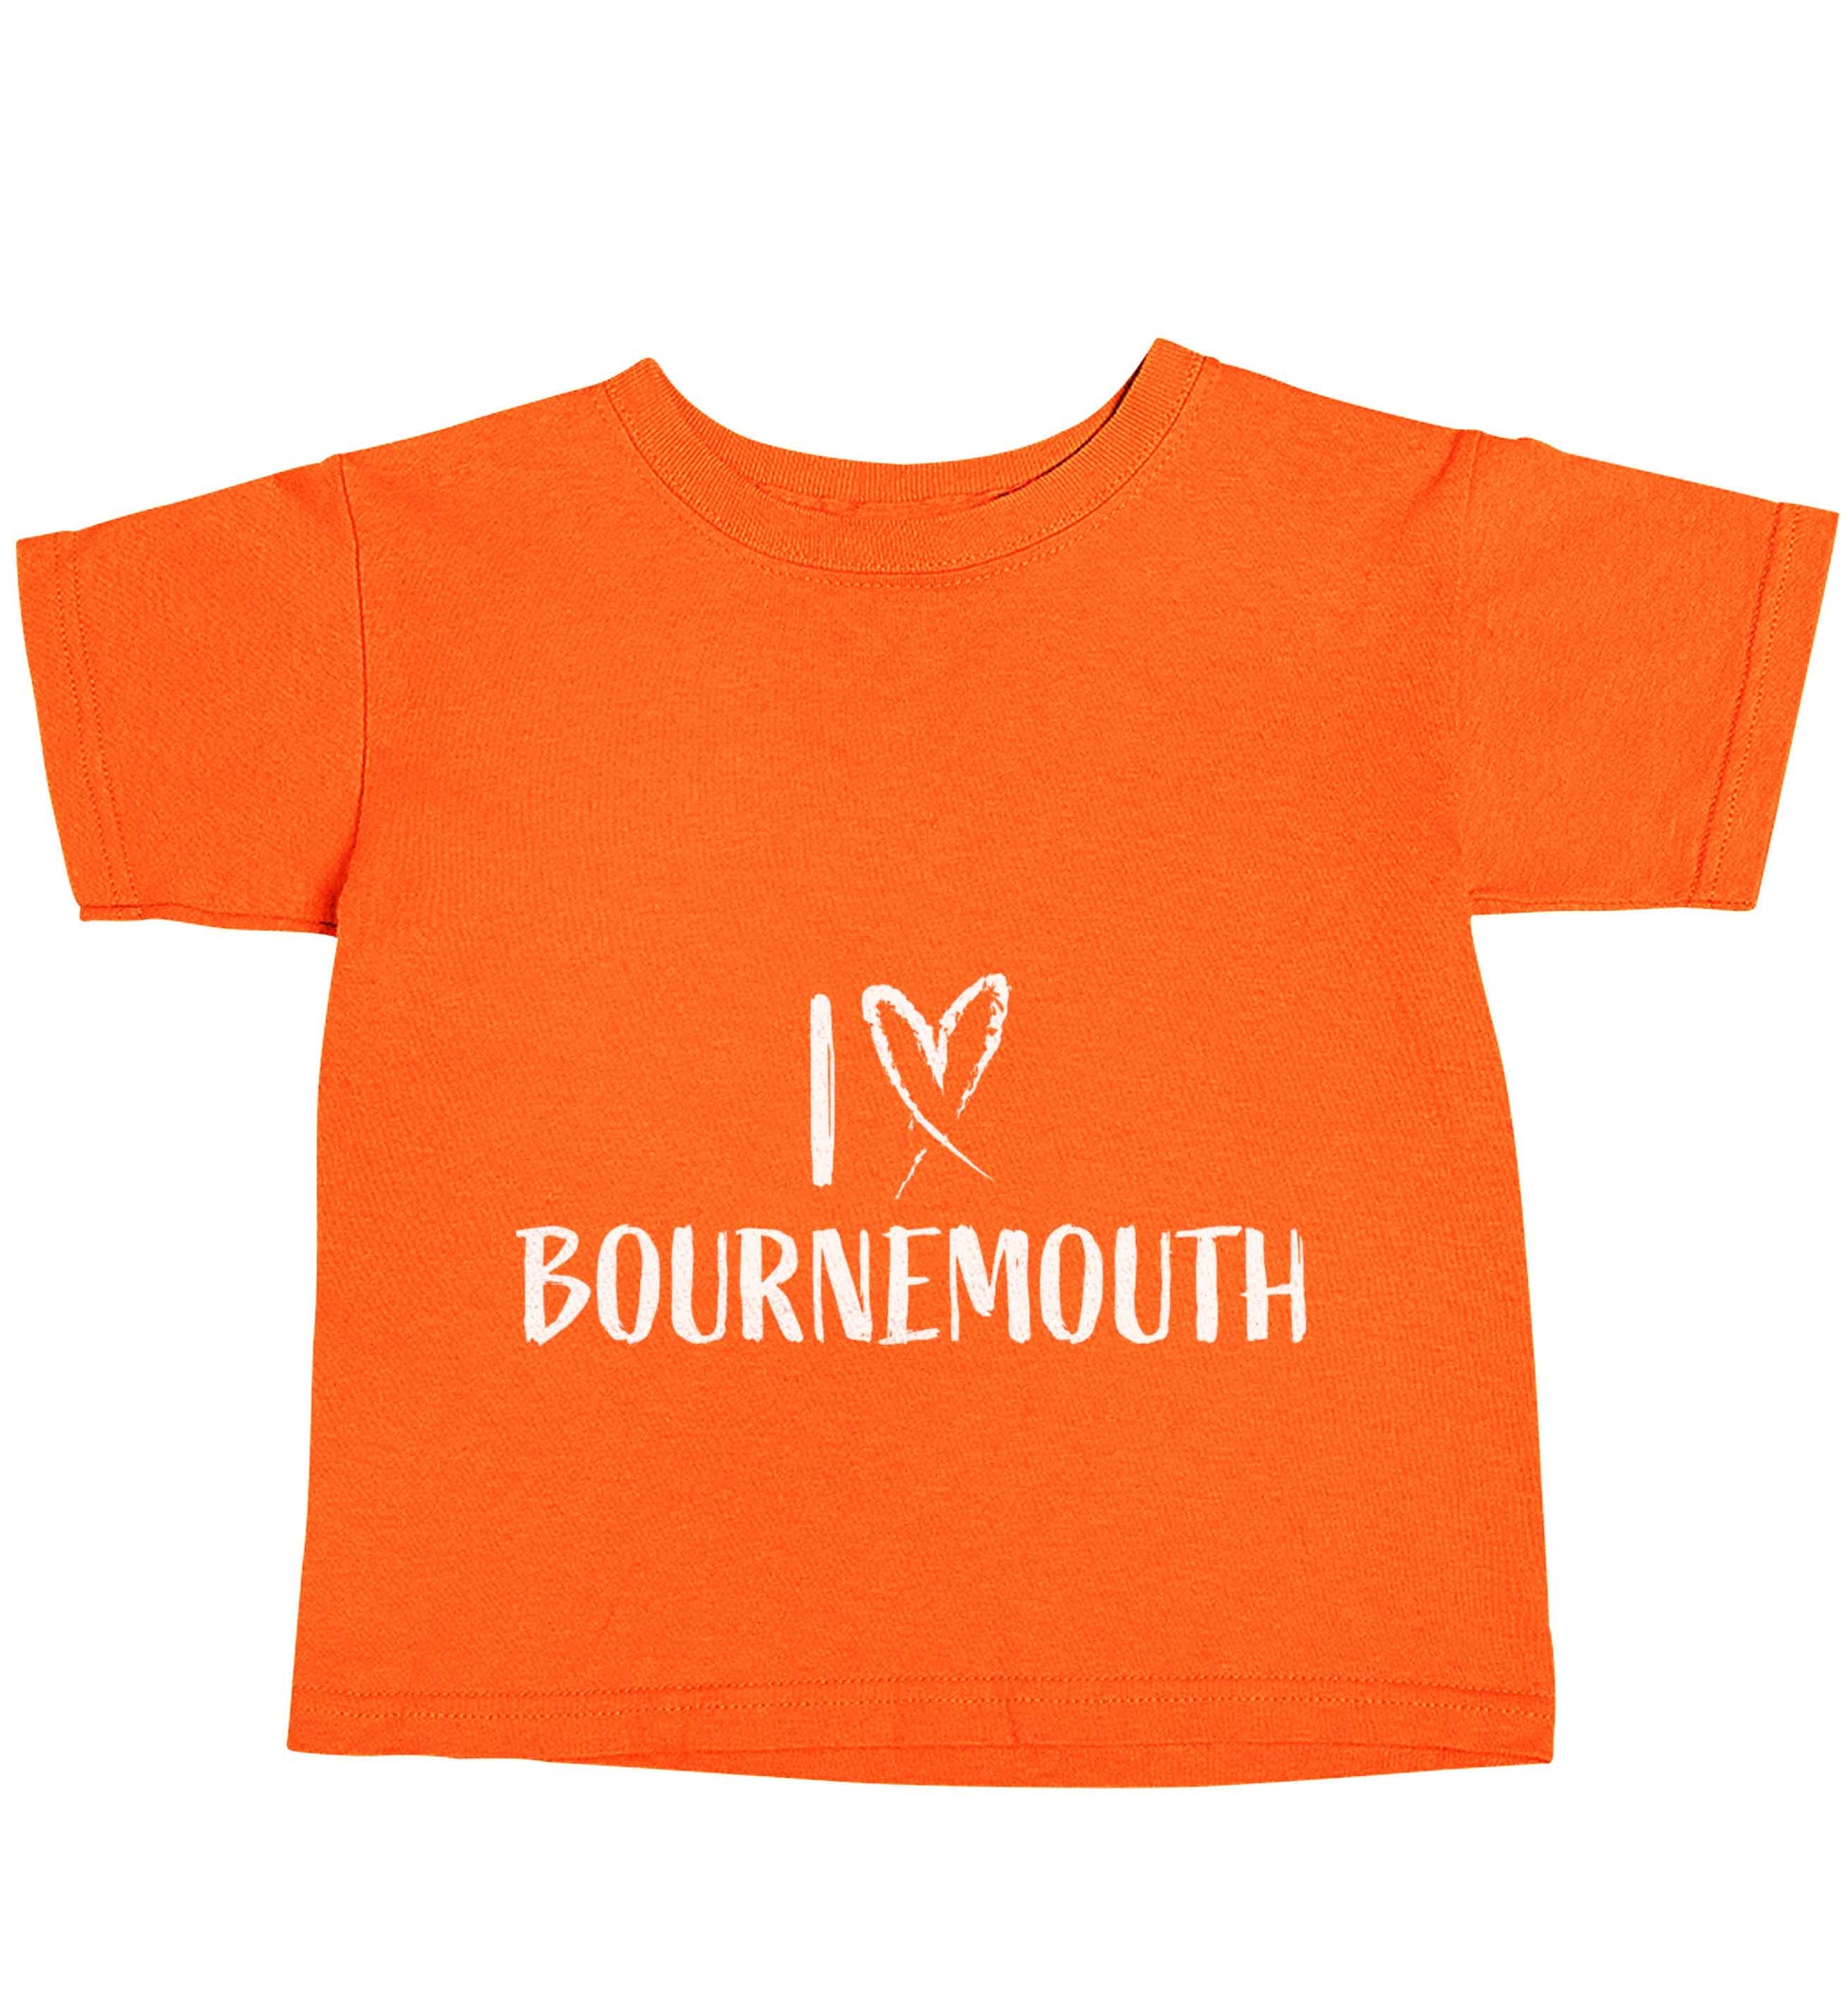 I love Bournemouth orange baby toddler Tshirt 2 Years